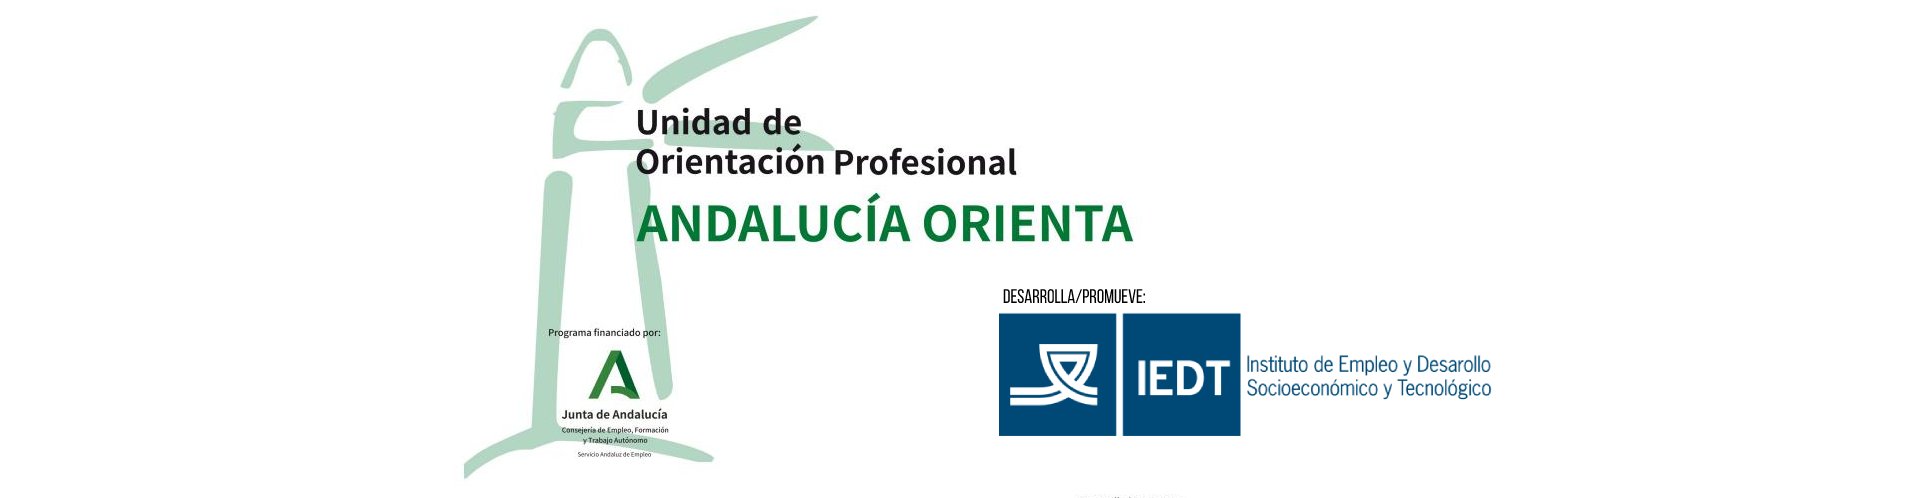 Unidad de Orientación Profesional Andalucía Orienta. Desarrolla y promueve el IEDT de la Diputación de Cádiz